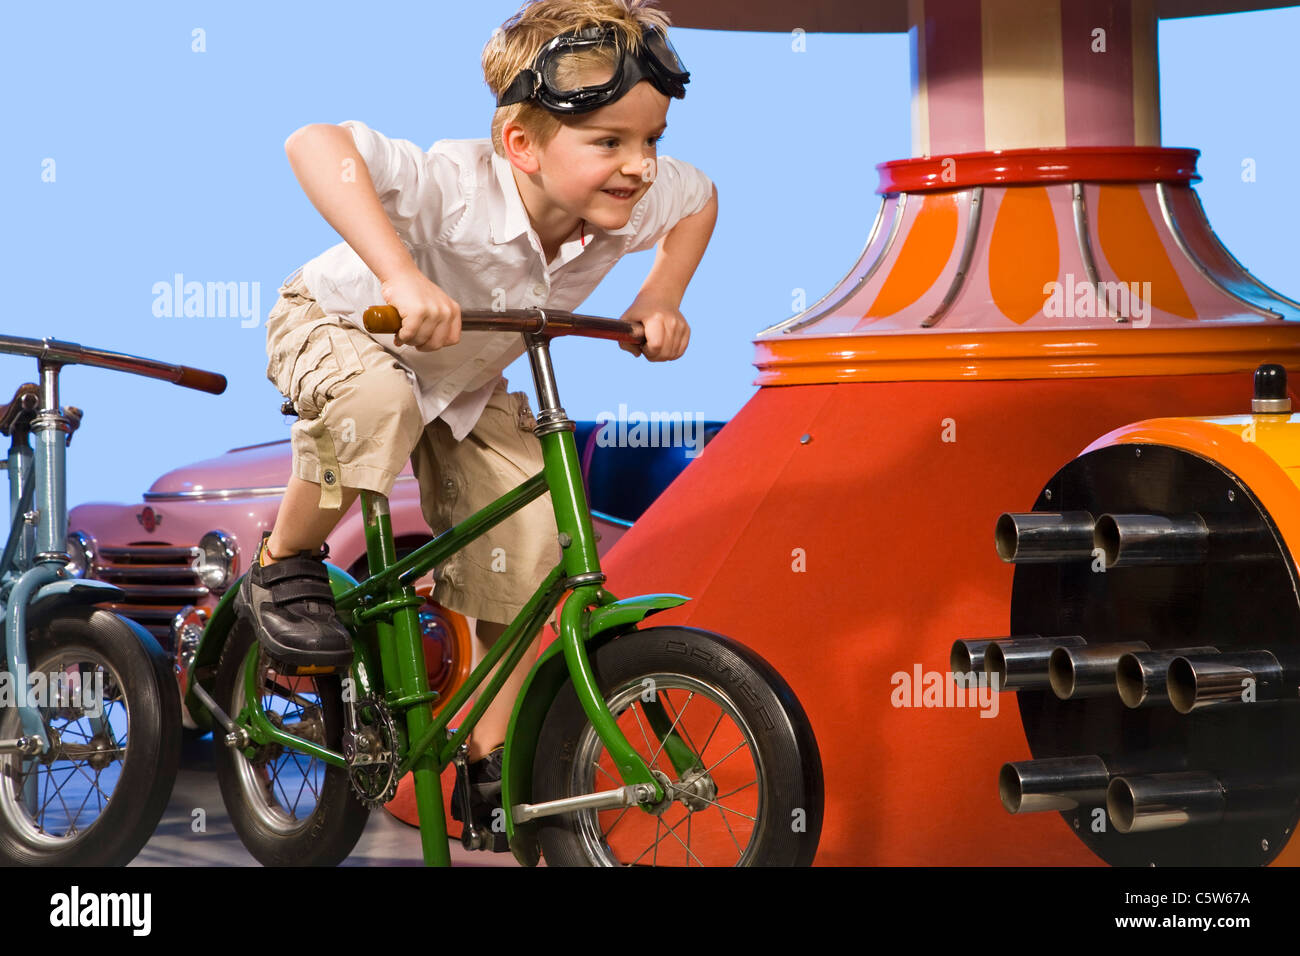 Allemagne, Landshut, little boy (4-5) carrousel équestre vélo, smiling Banque D'Images